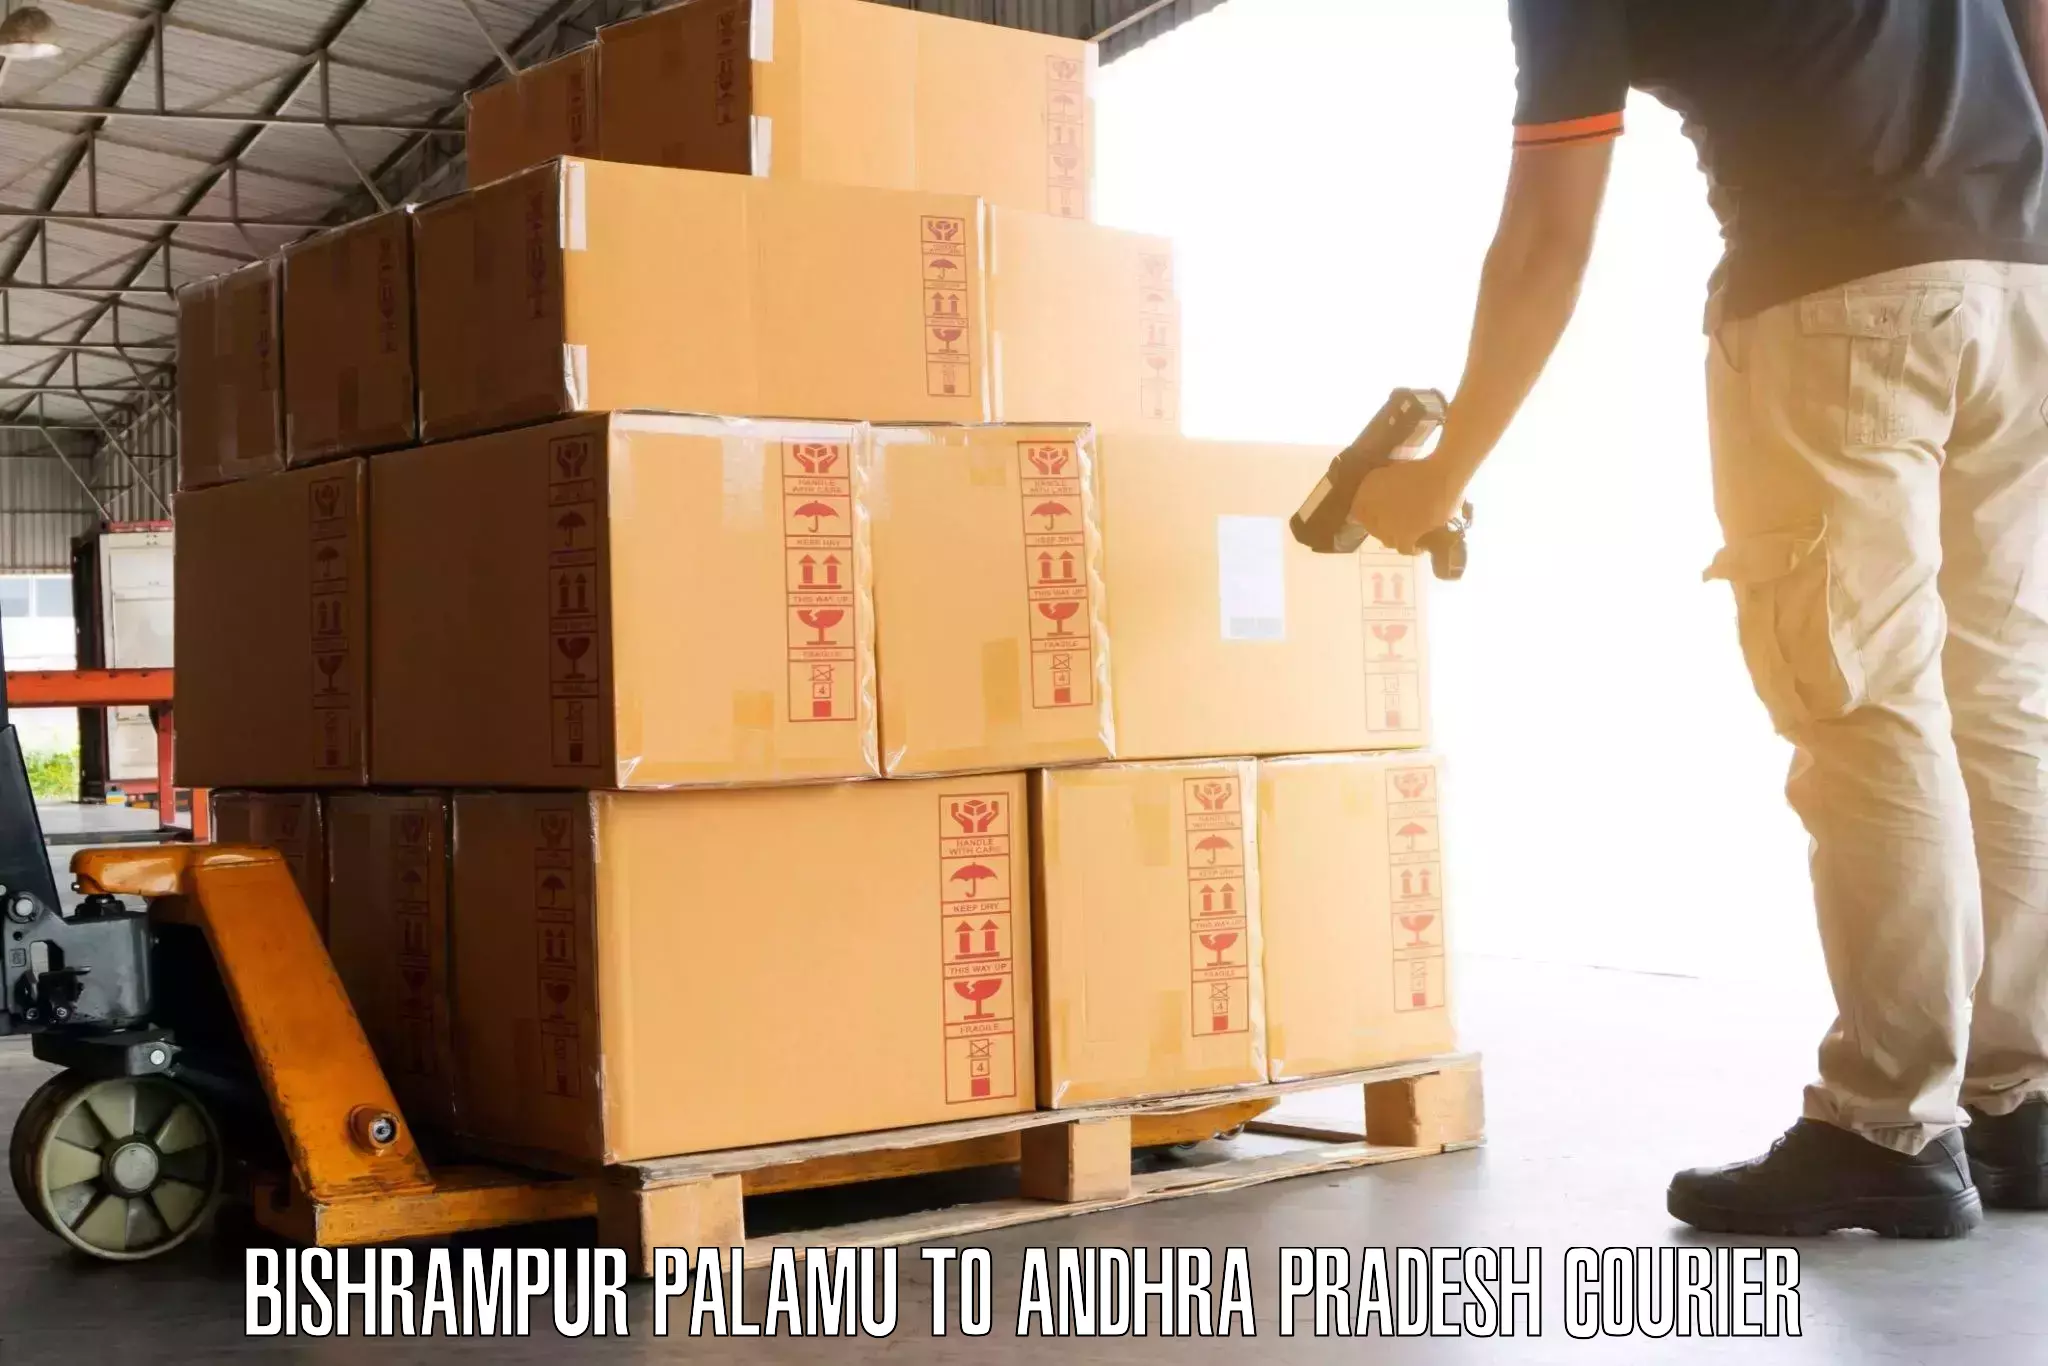 Baggage shipping service Bishrampur Palamu to Waltair